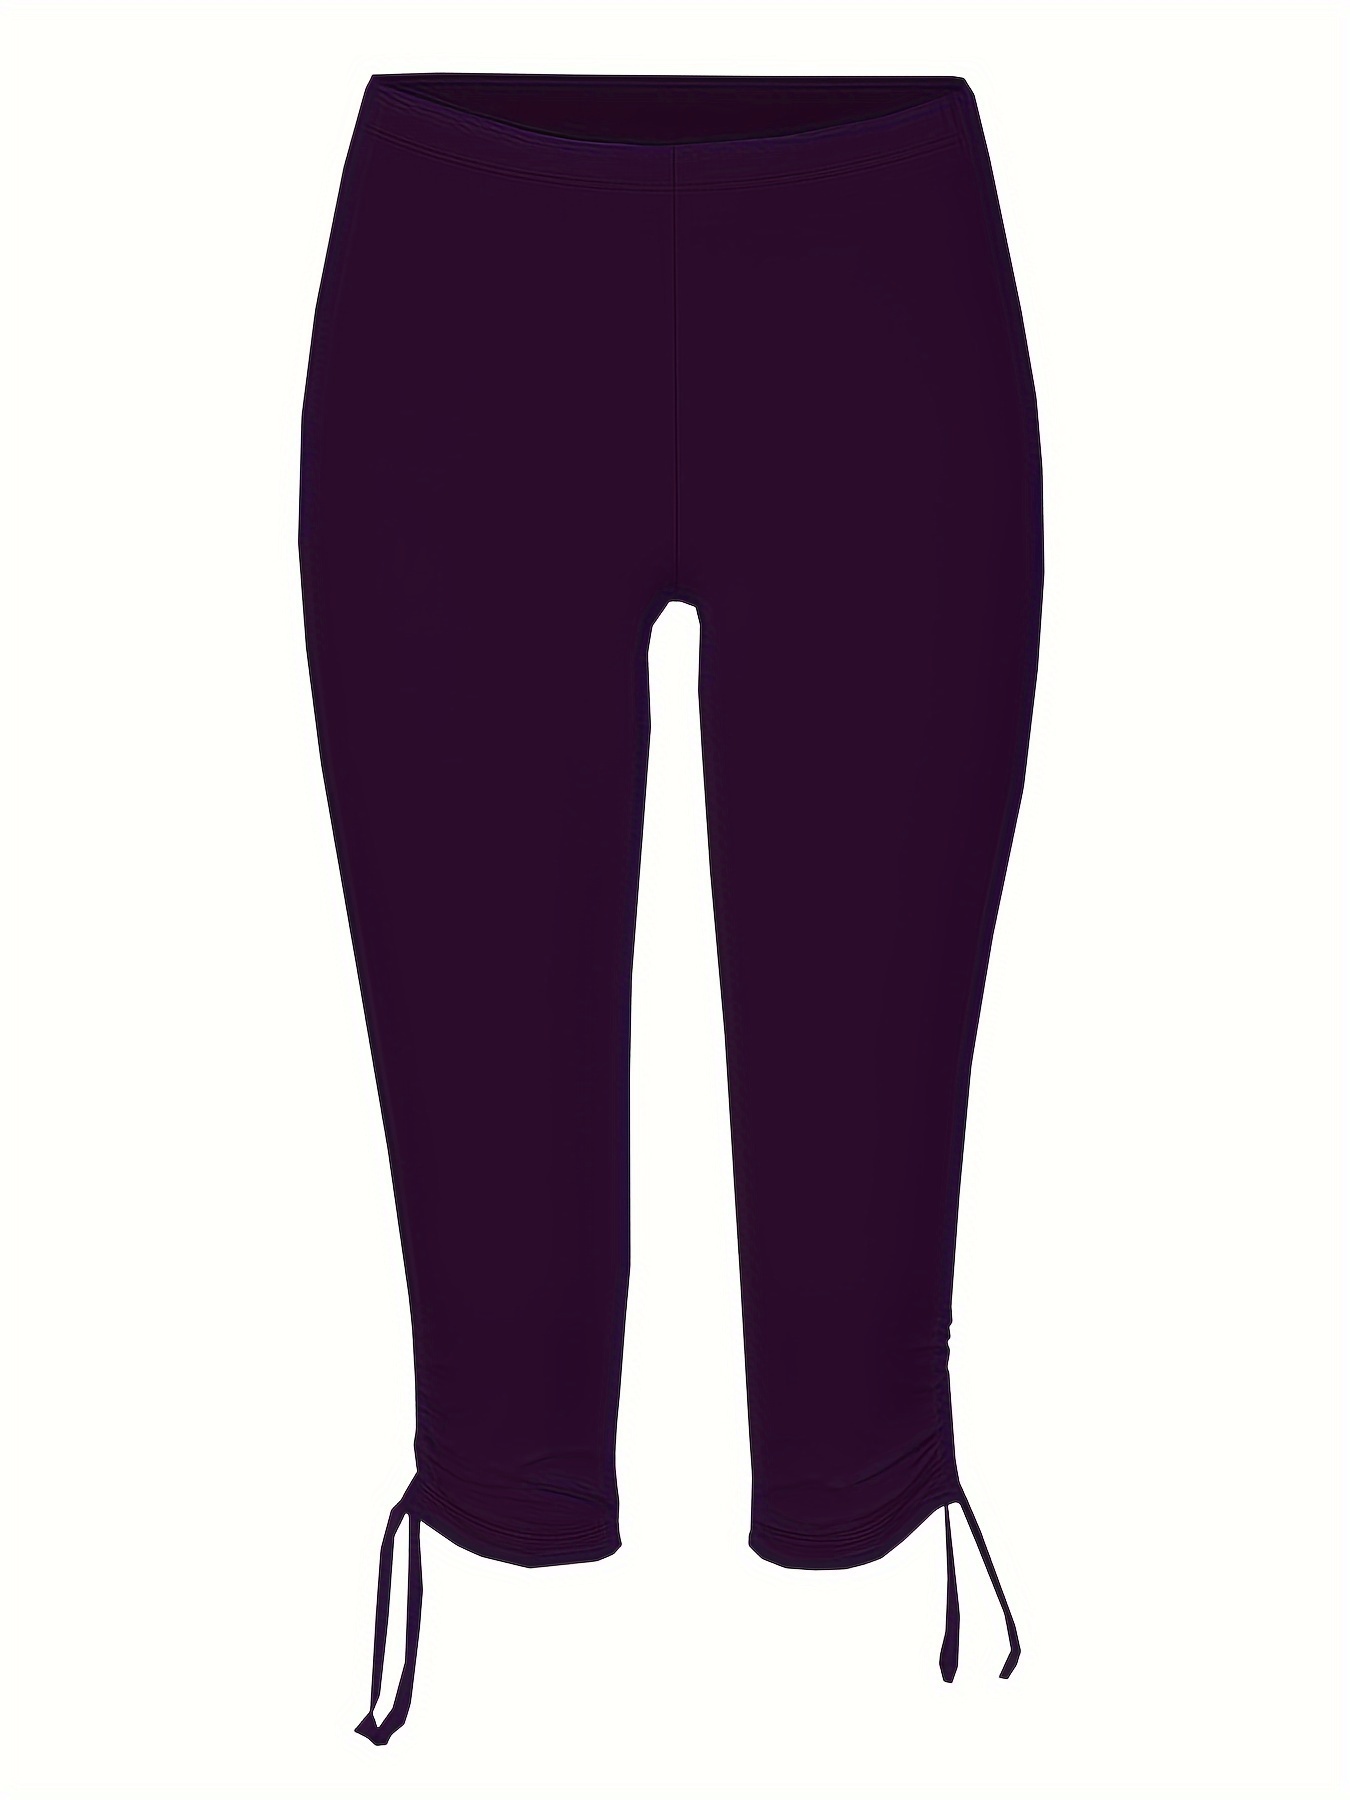 Plus Size Sports Leggings, Women's Plus Letter Print Fleece Lined Wide  Waistband Warm Winter Skinny Pants